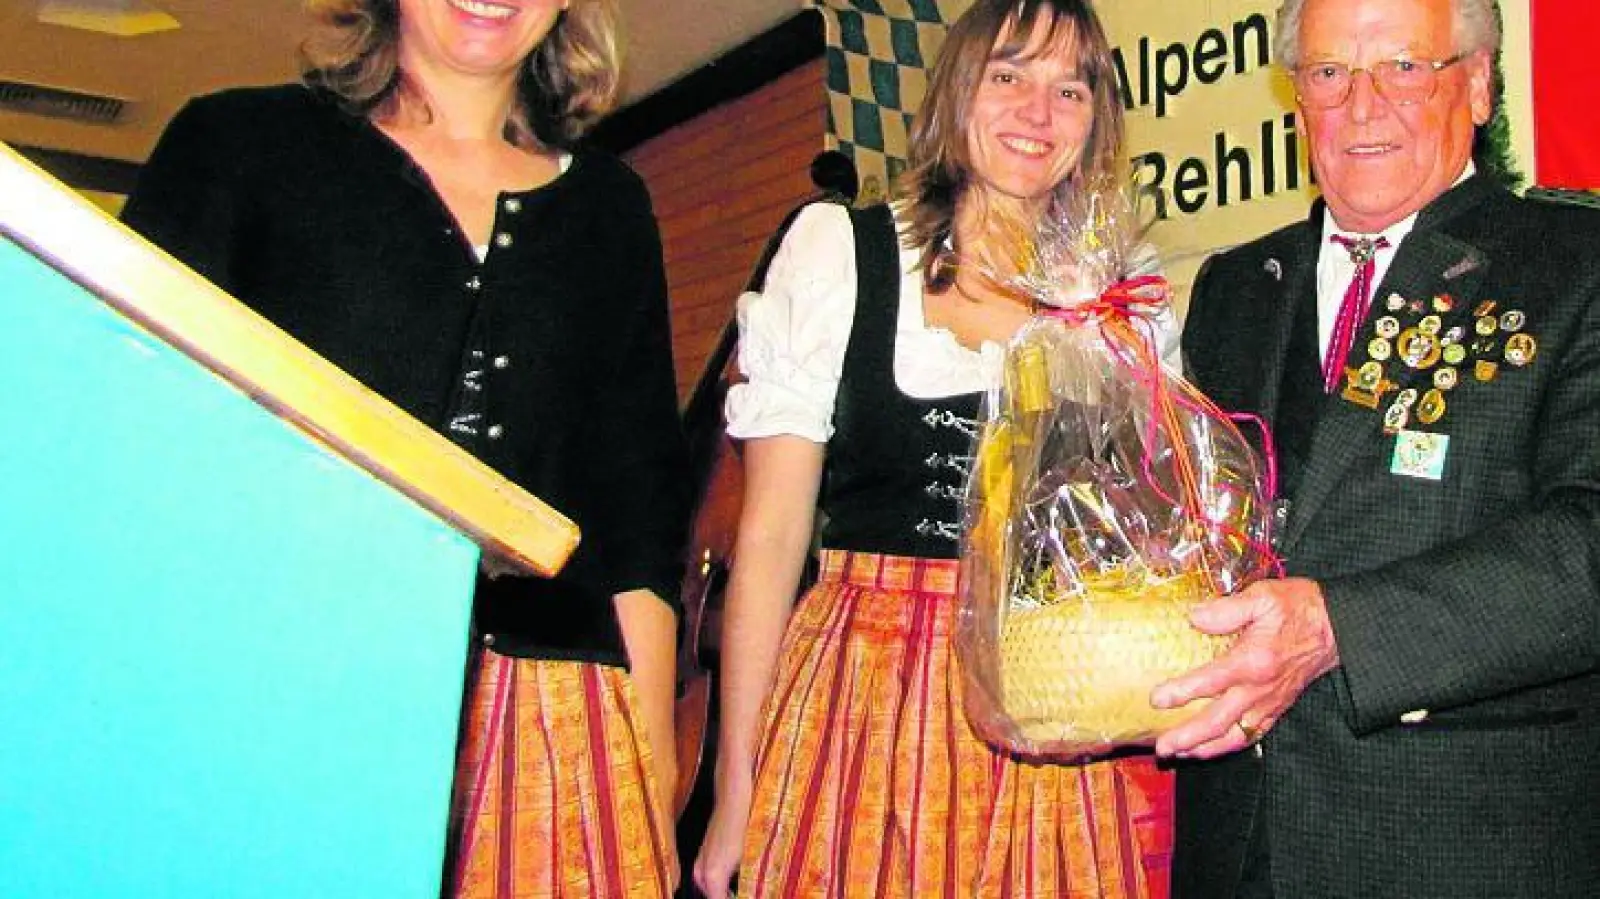 &lt;p&gt; &lt;x_bildunterschr&gt; &lt;b&gt;Ehrenschützenmeister &lt;/b&gt; Johann Mertl freute sich über ein Präsent von den beiden Schützenmeisterinnen Lucia Schapfl (links) und Angela Schlögl. &lt;/x_bildunterschr&gt; &lt;/p&gt;